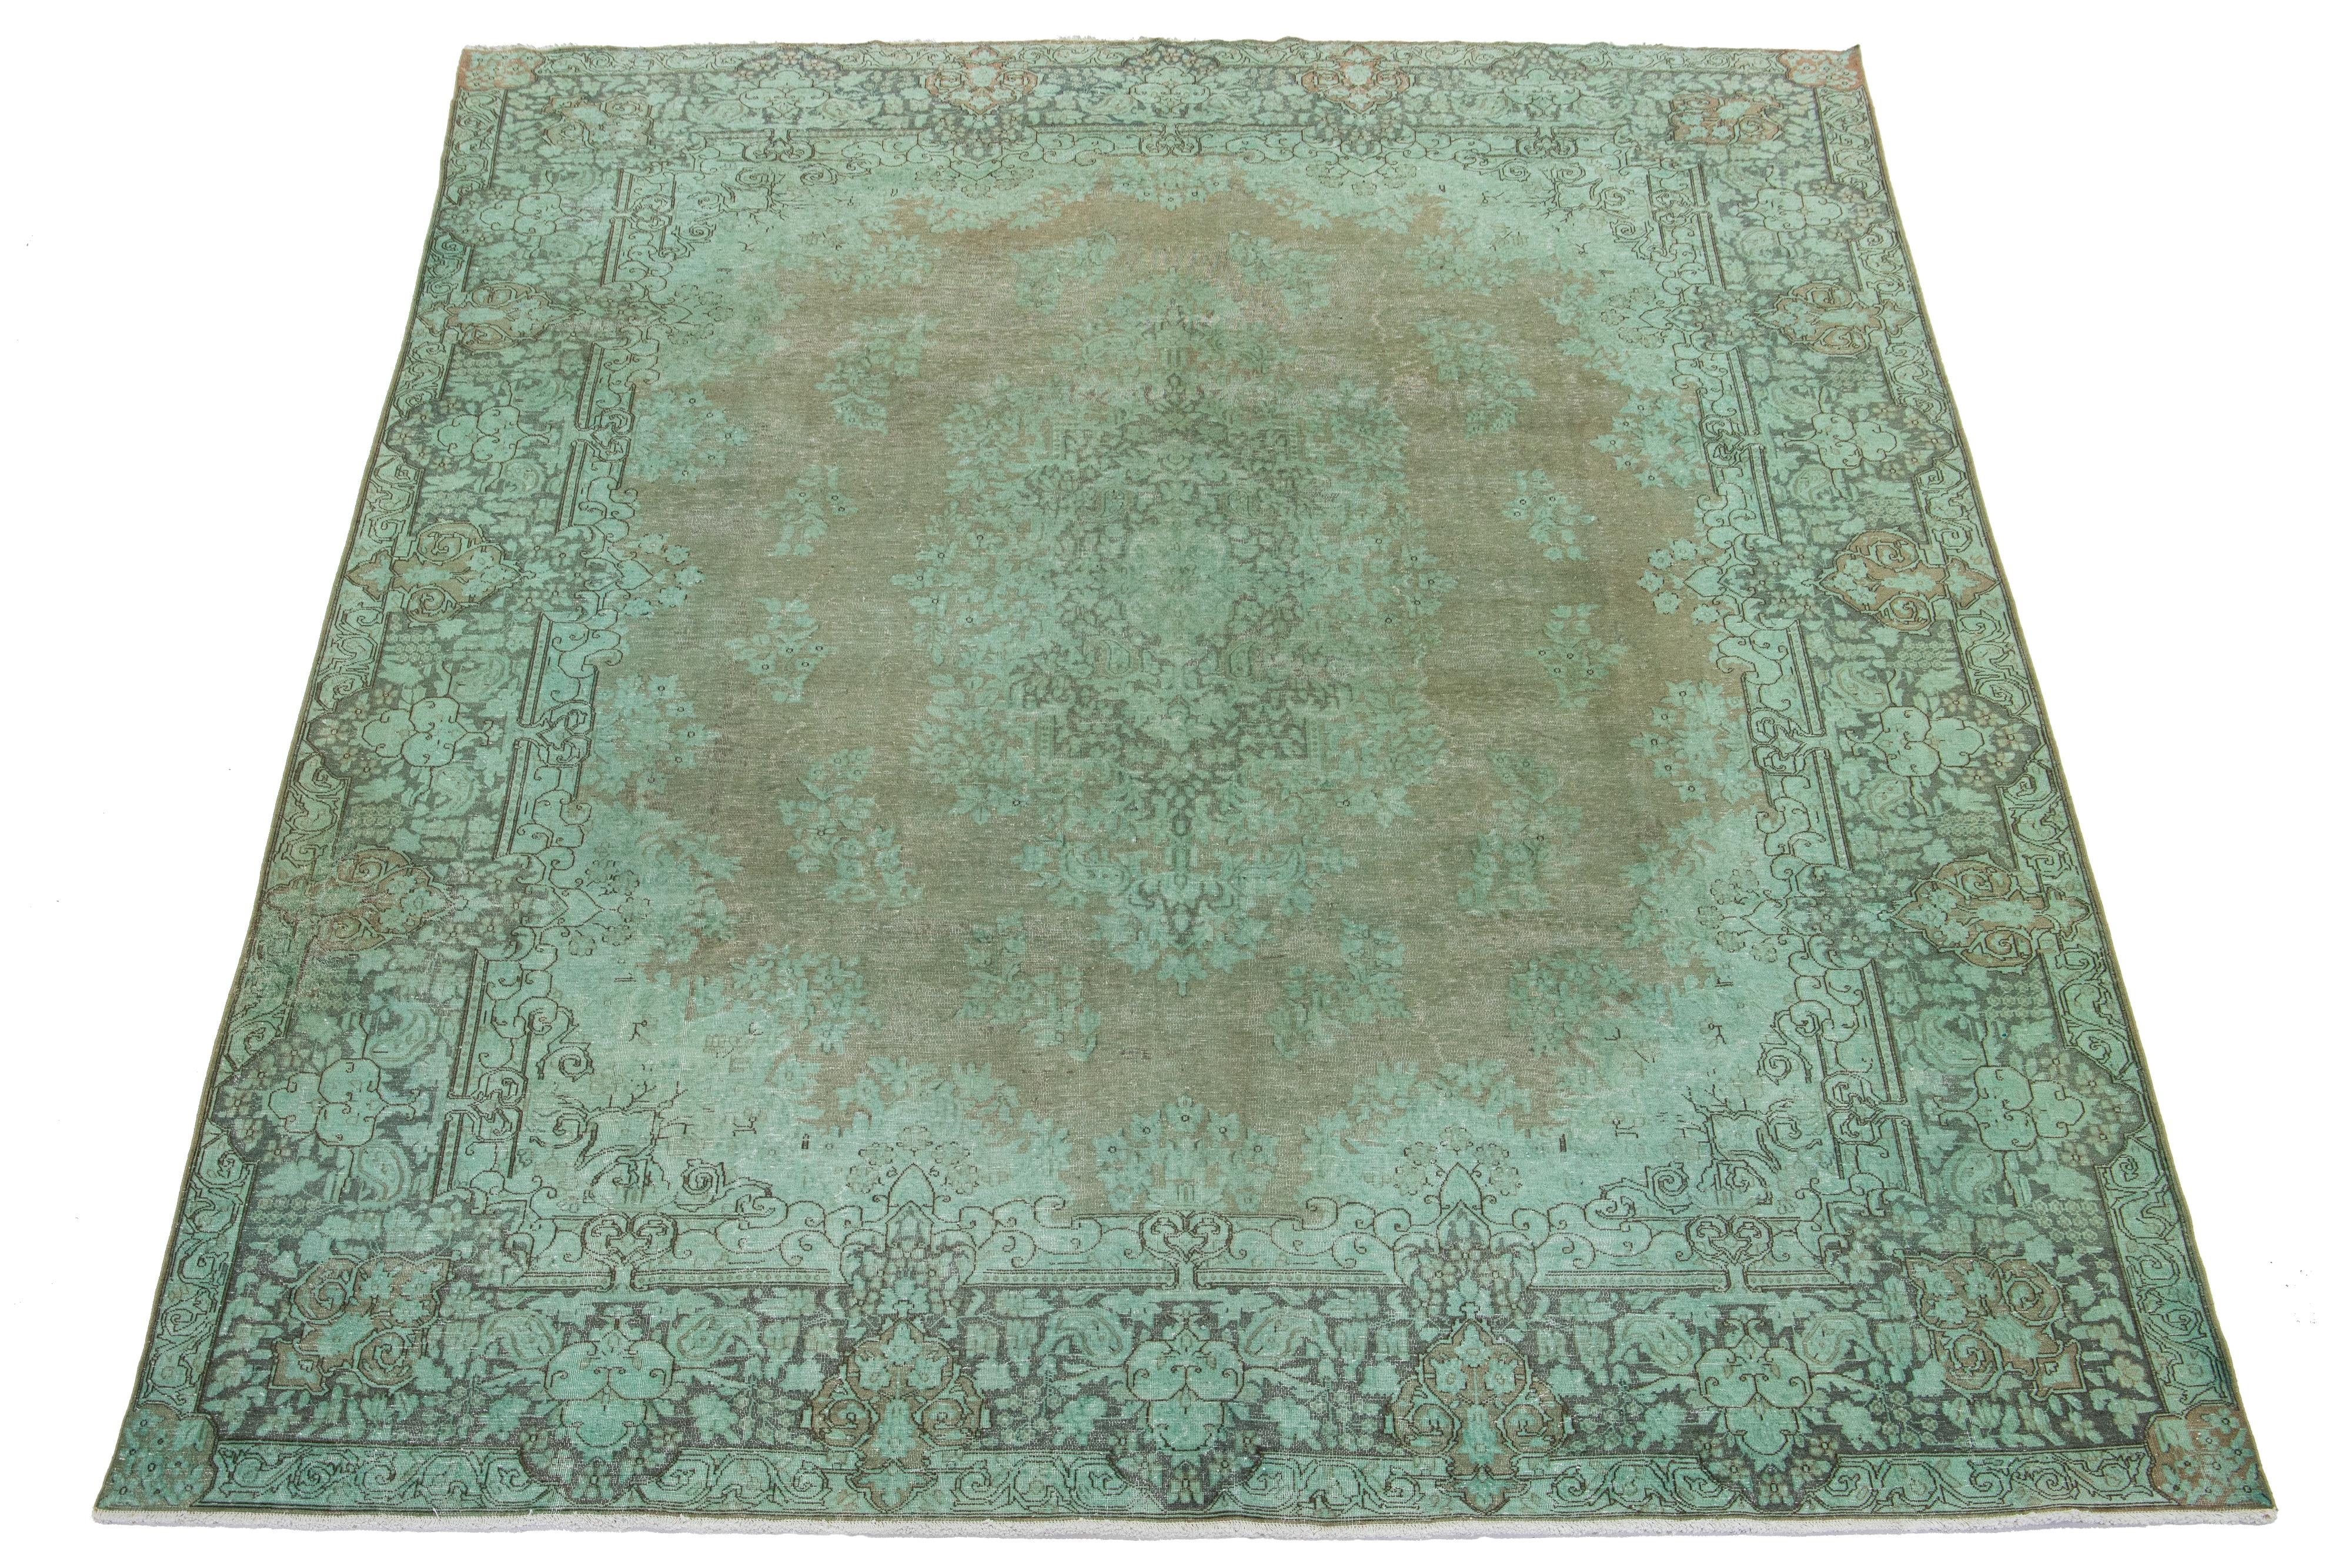 Dieser grüne, antike, handgeknüpfte Teppich aus persischer Wolle hat ein florales Medaillonmuster und graue Akzente.

Dieser Teppich misst 9'11'' x 12'6